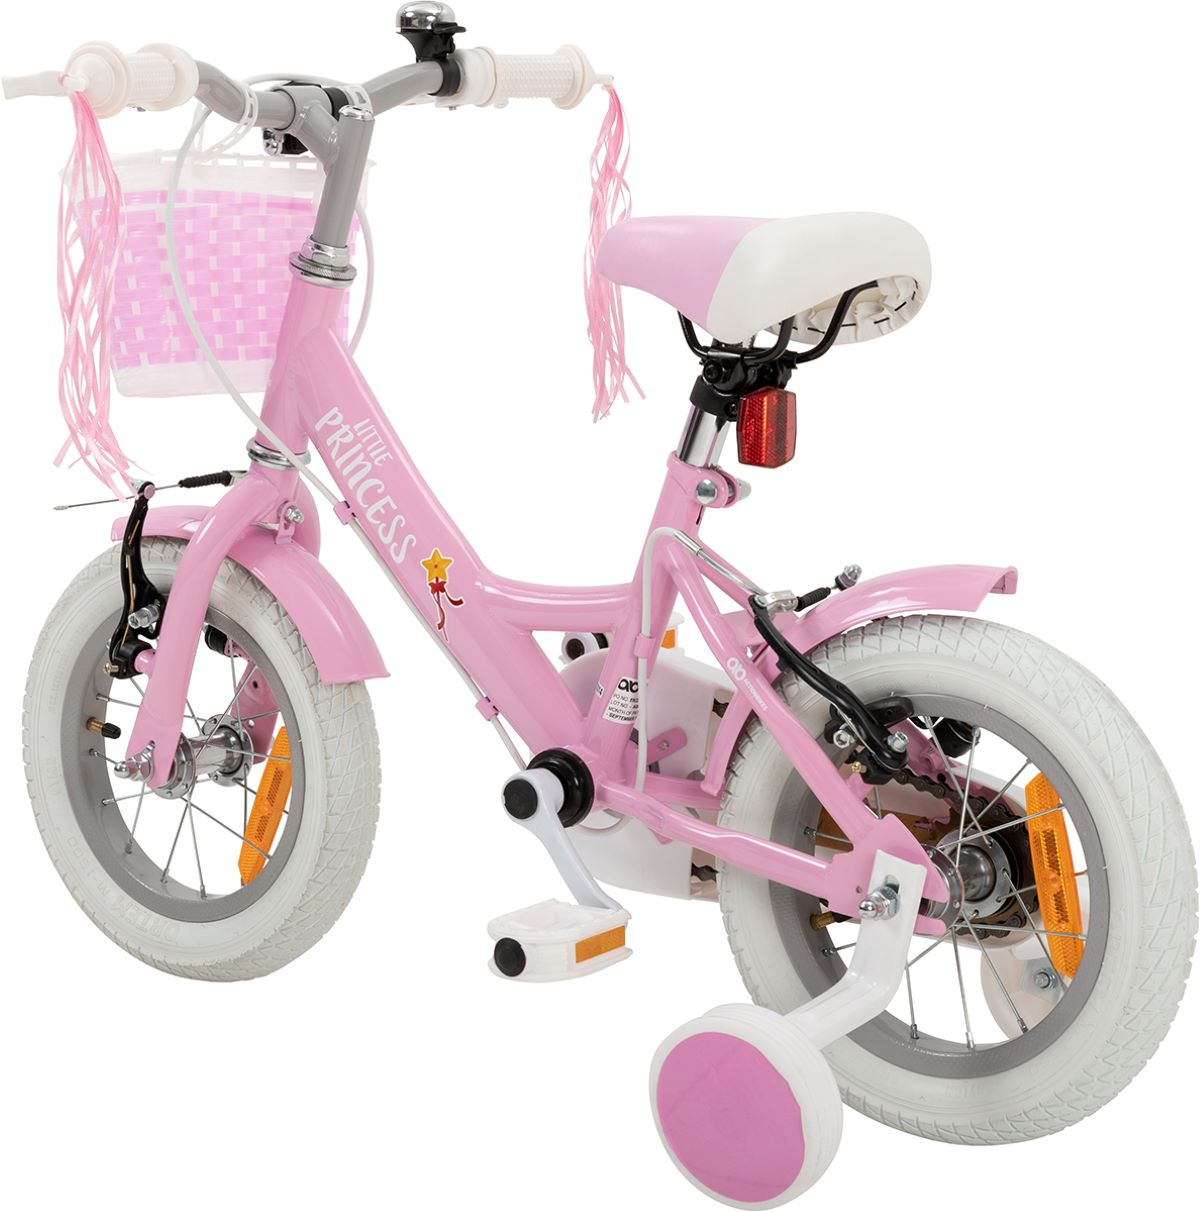 MOTORS Fahrrad ACTIONBIKES Kinder Princess 12\'